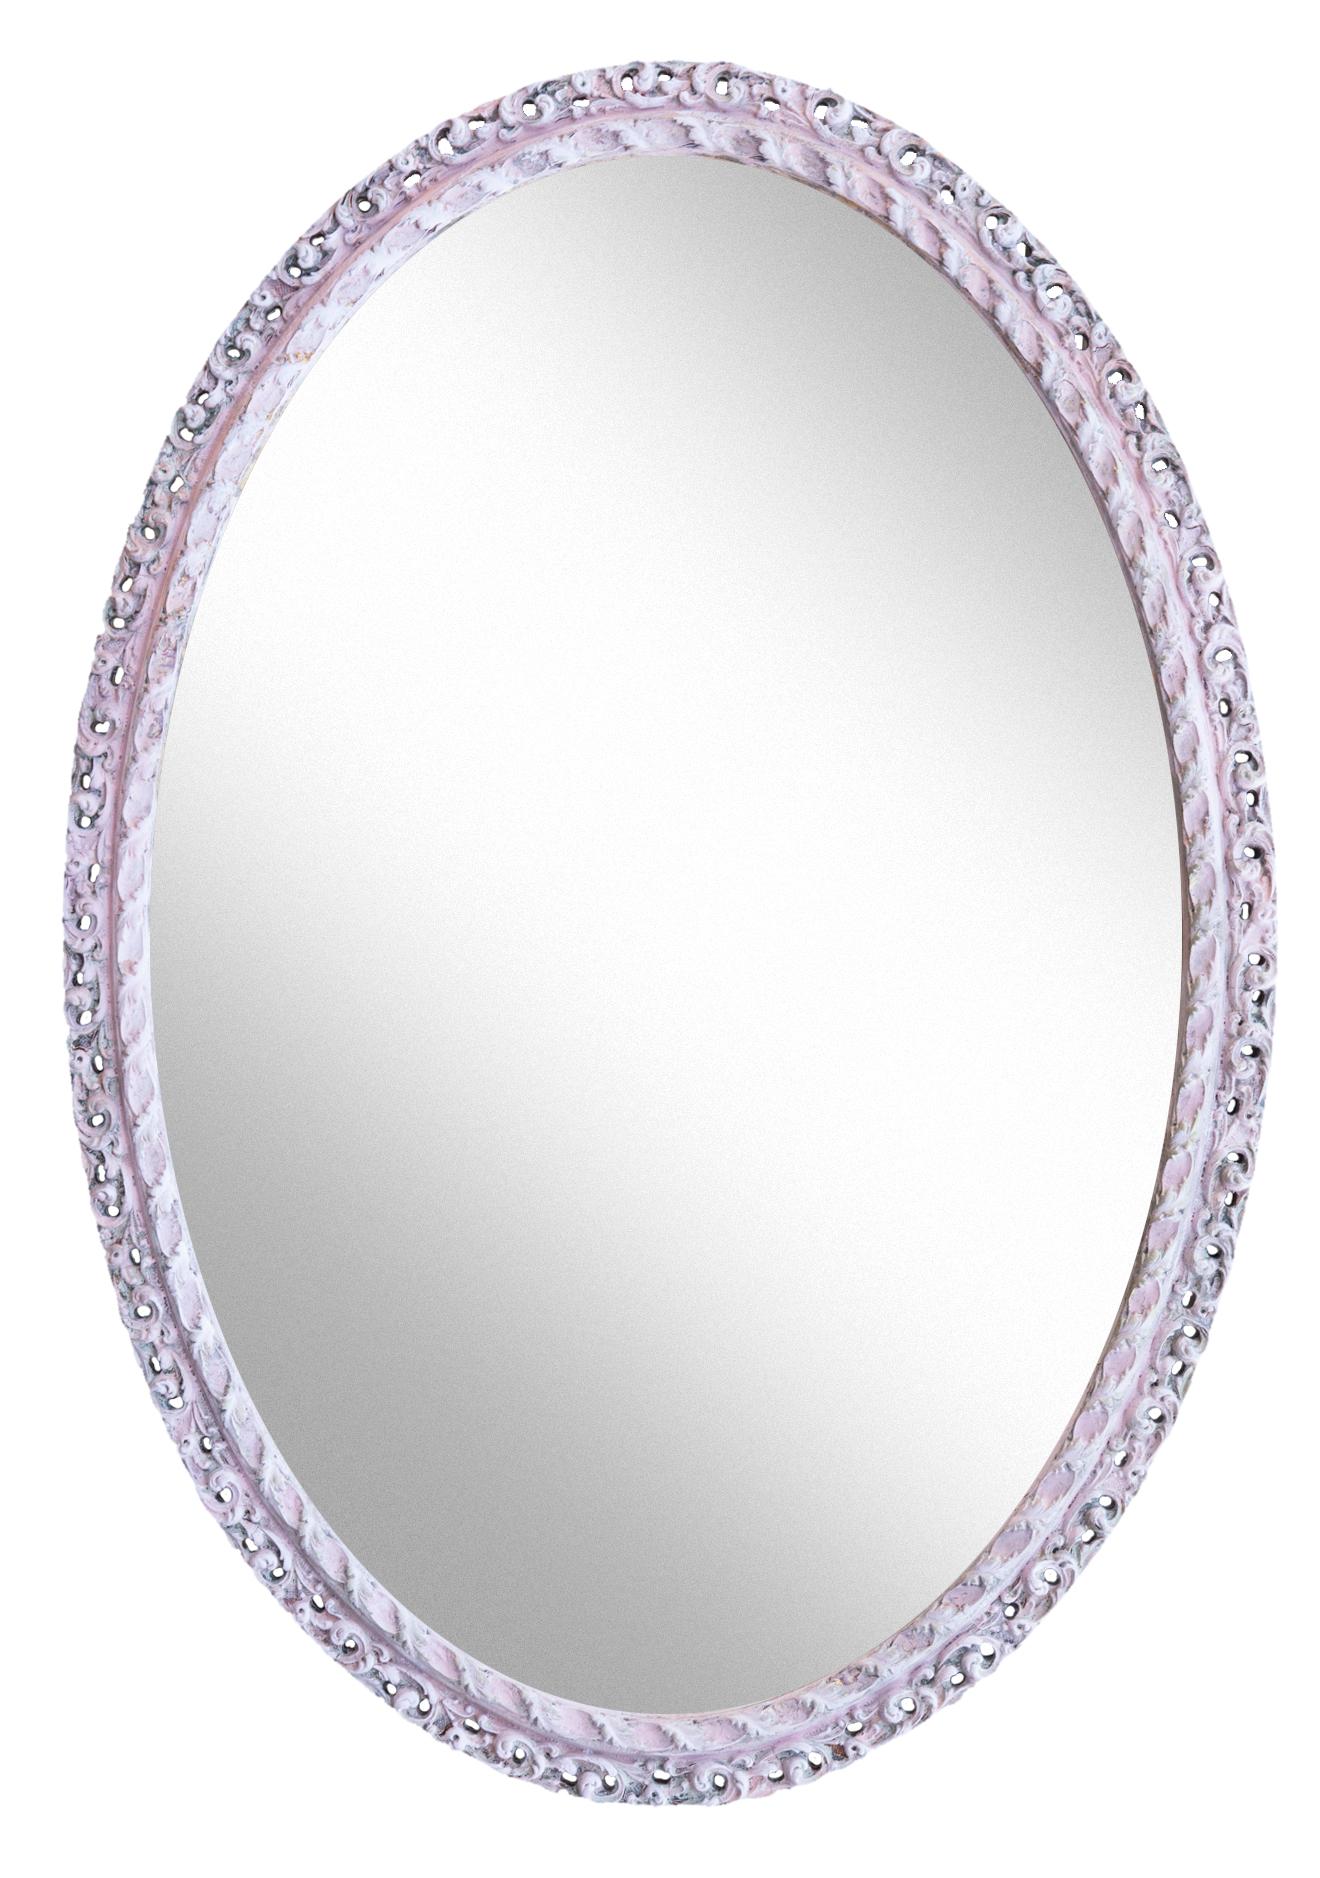 Vintage European oval Hollywood Regency Stil gerahmt Spiegel mit Laubsägearbeiten im gesamten.
Originaler Spiegel, mit neuer Rückwand versehen und verdrahtet, um horizontal oder vertikal zu hängen. CIRCA 1960er Jahre, 
Ein wunderschönes Schmuckstück